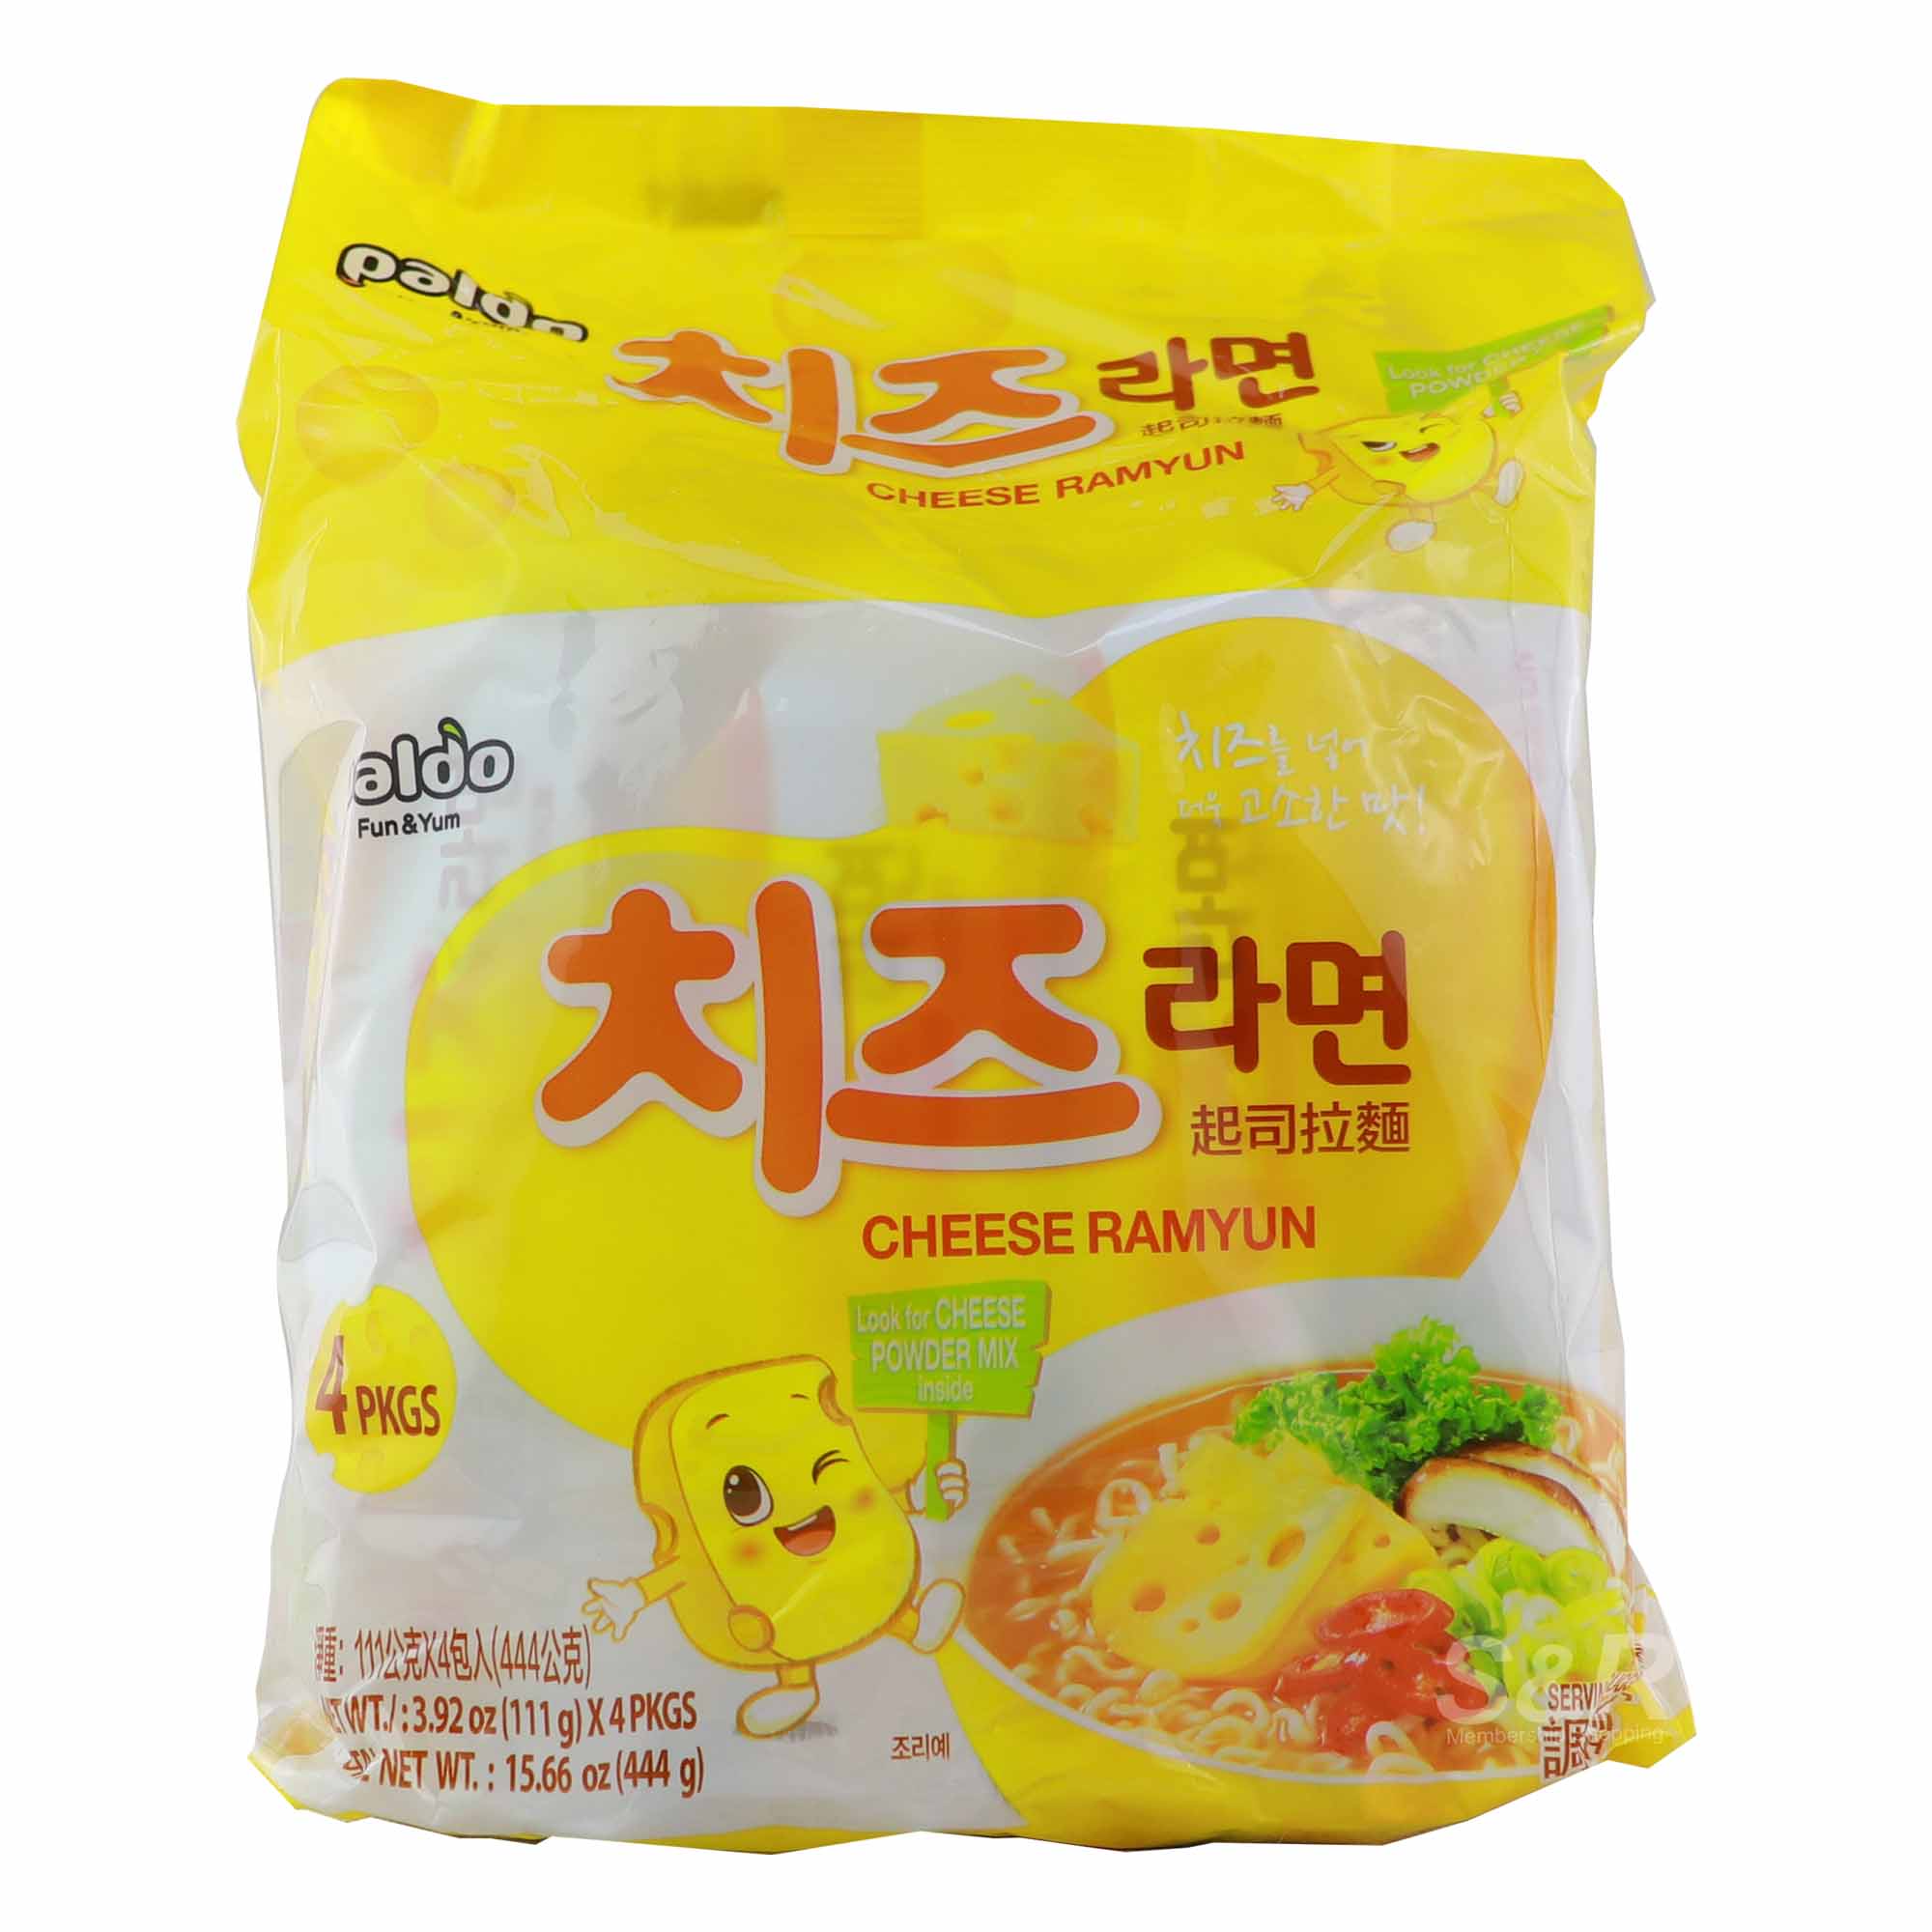 Paldo Cheese Ramyun 4 packs